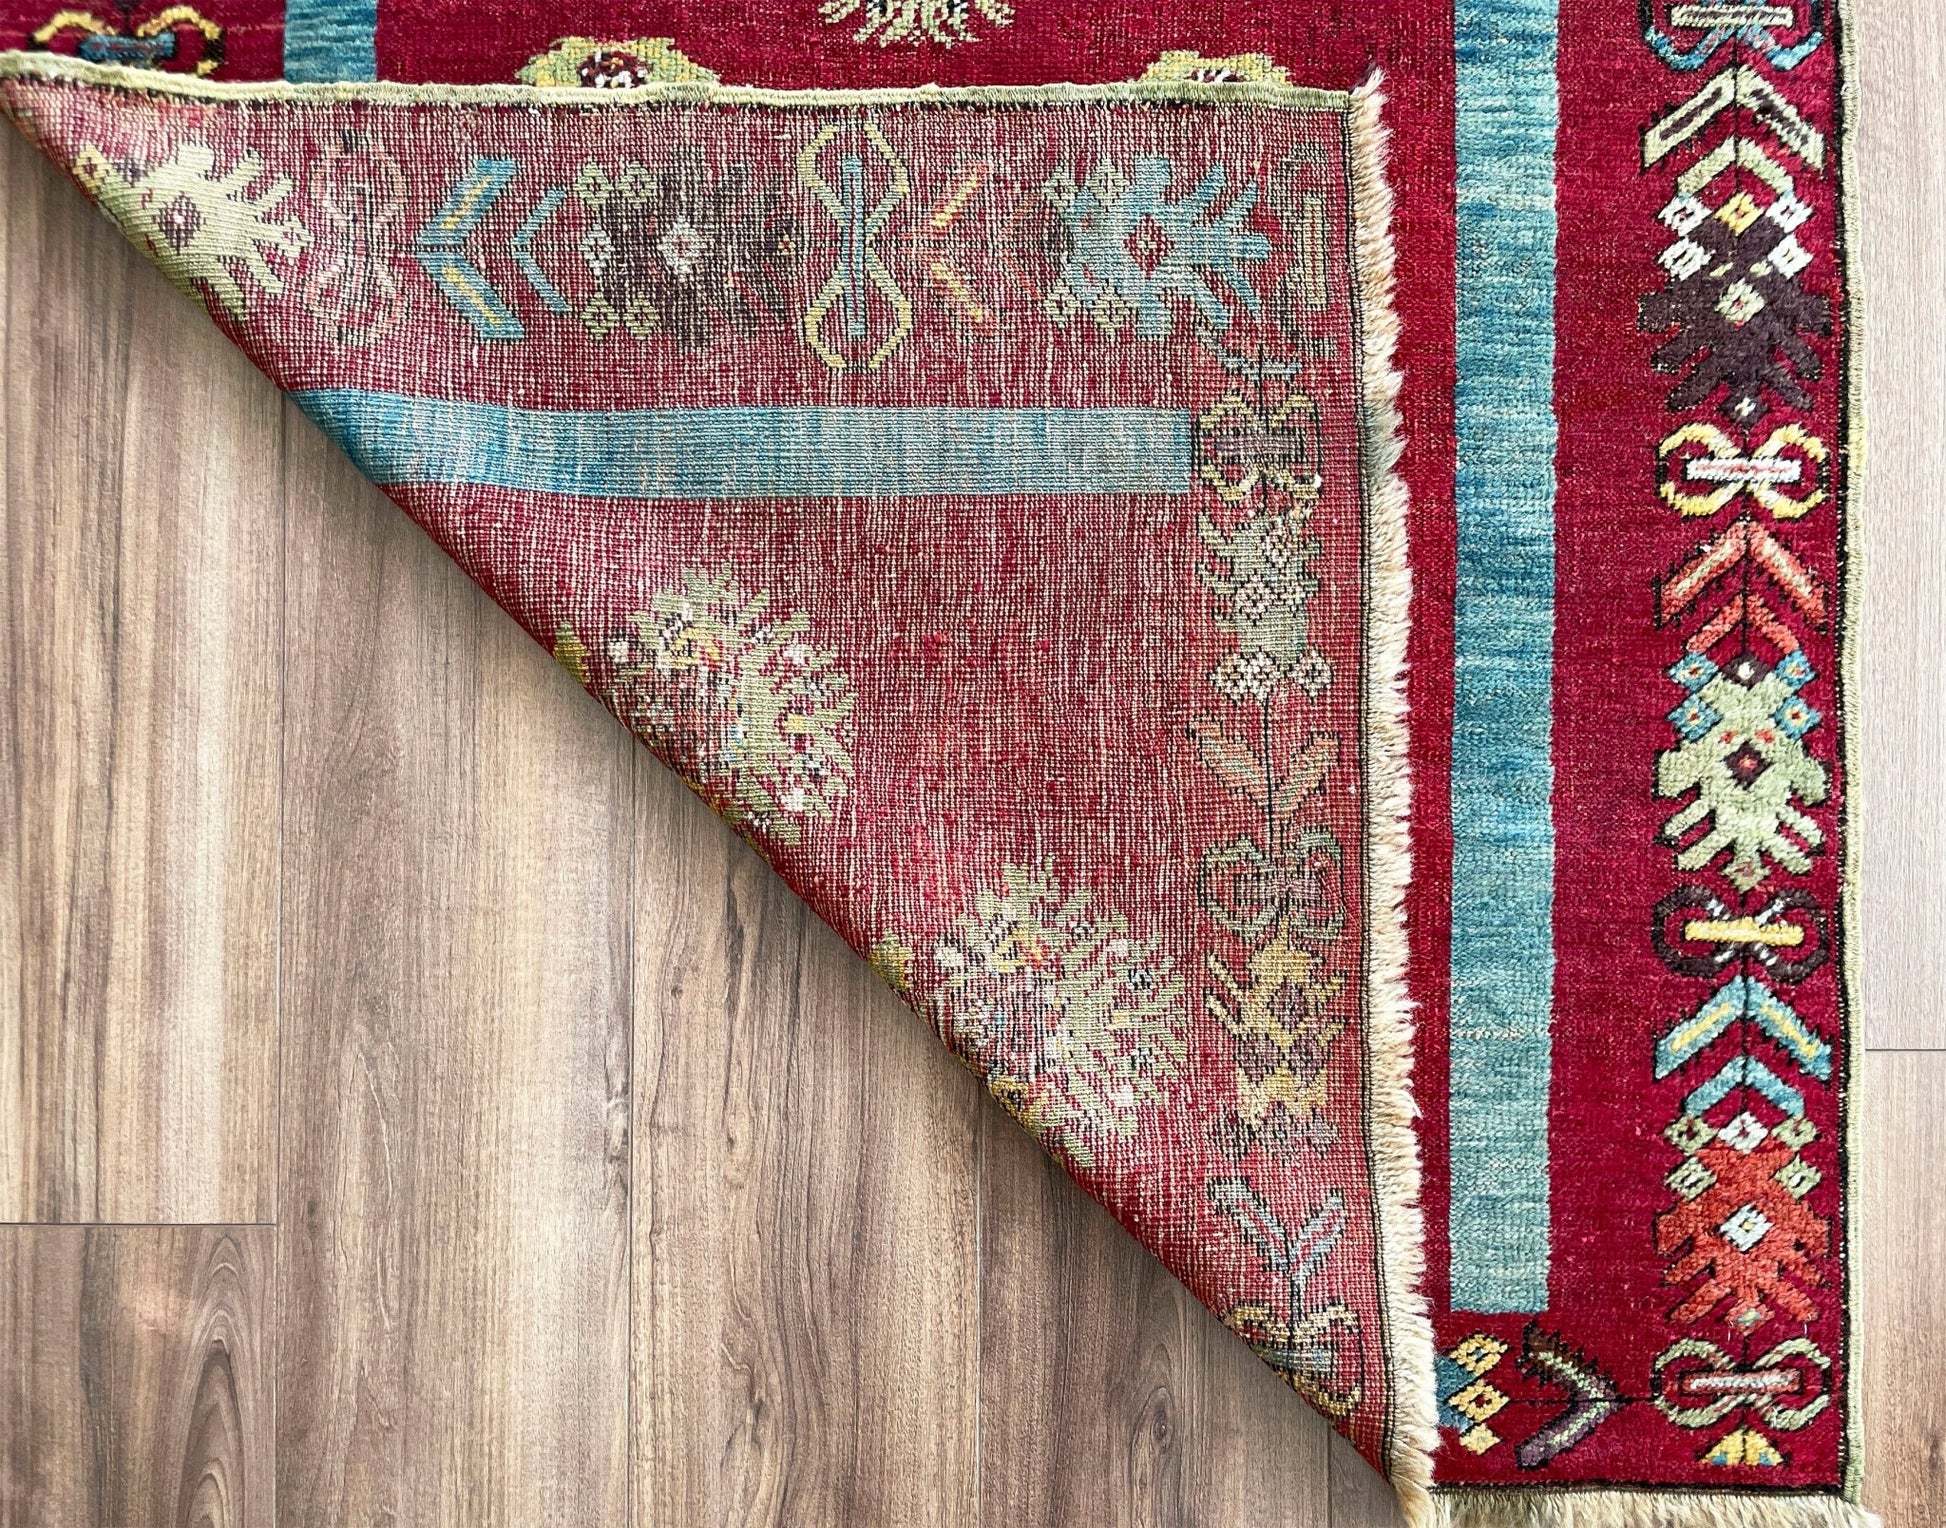 mucur Vintage Turkish rug shop san francisco bay area. antique prayer soft red rug, bold color store, local rug shop